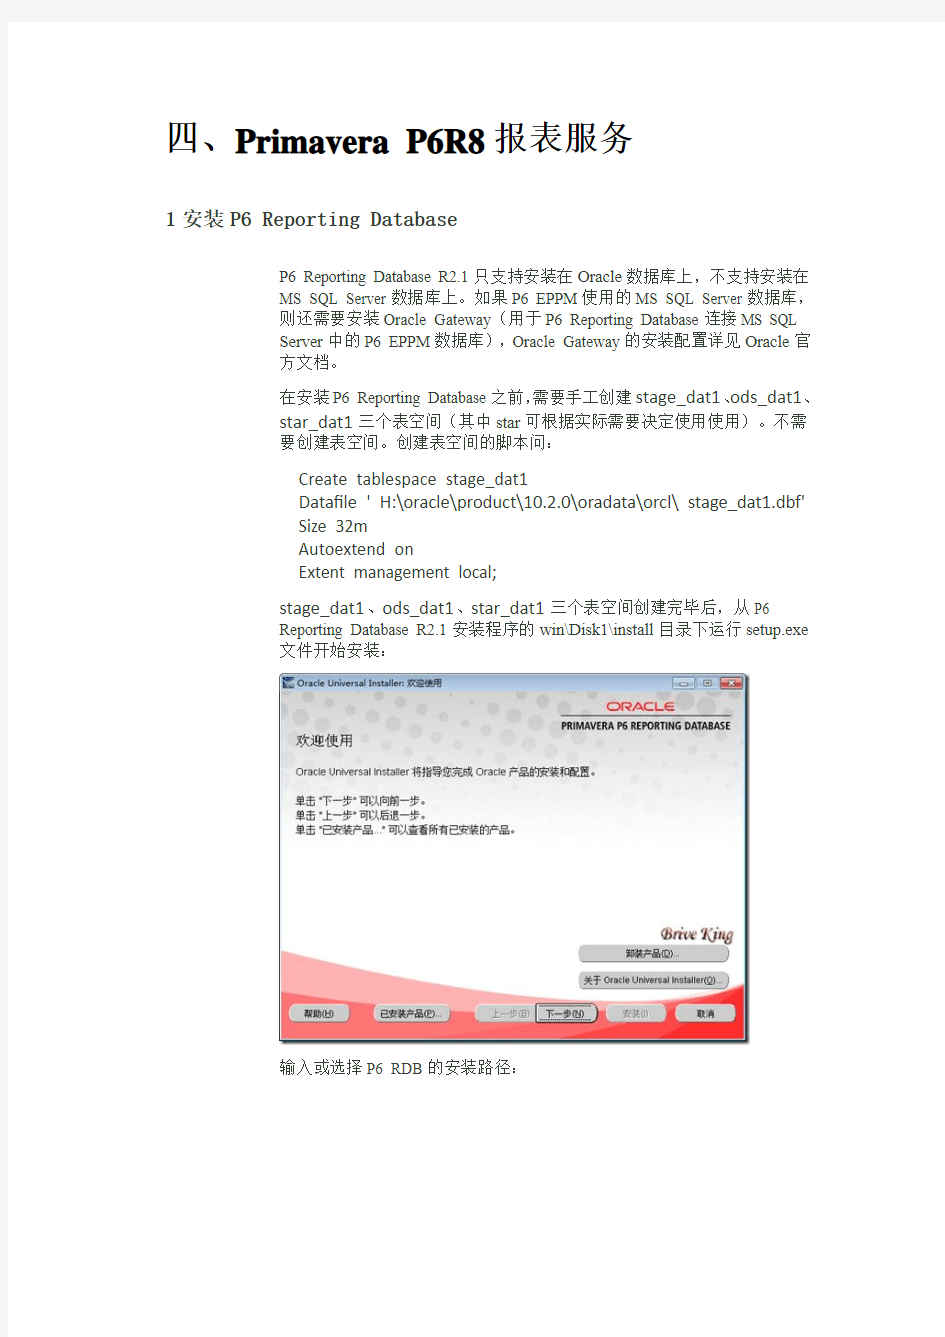 04_Primavera P6R8安装手册_安装配置报表服务